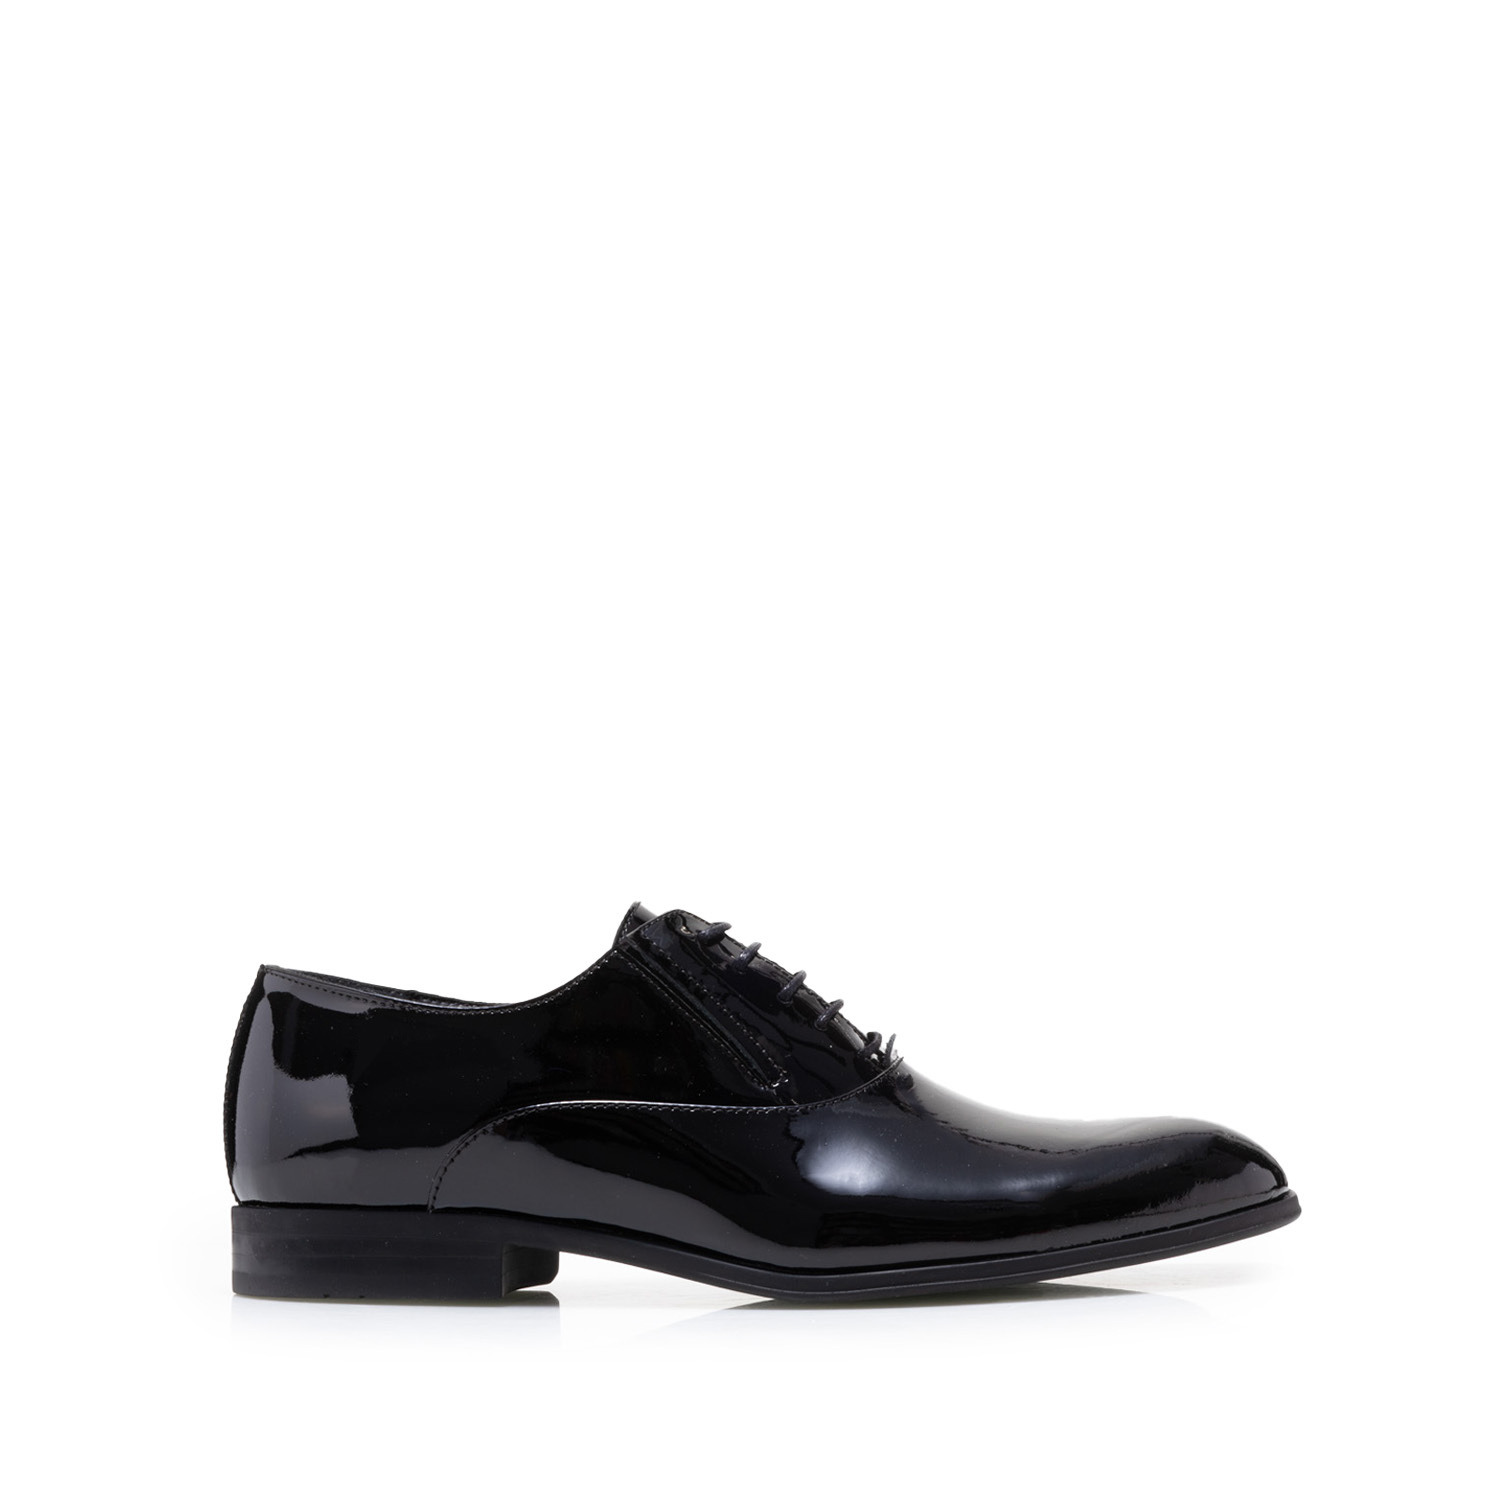 Pantofi eleganți bărbați din piele naturală, Leofex - 669 Negru Lac